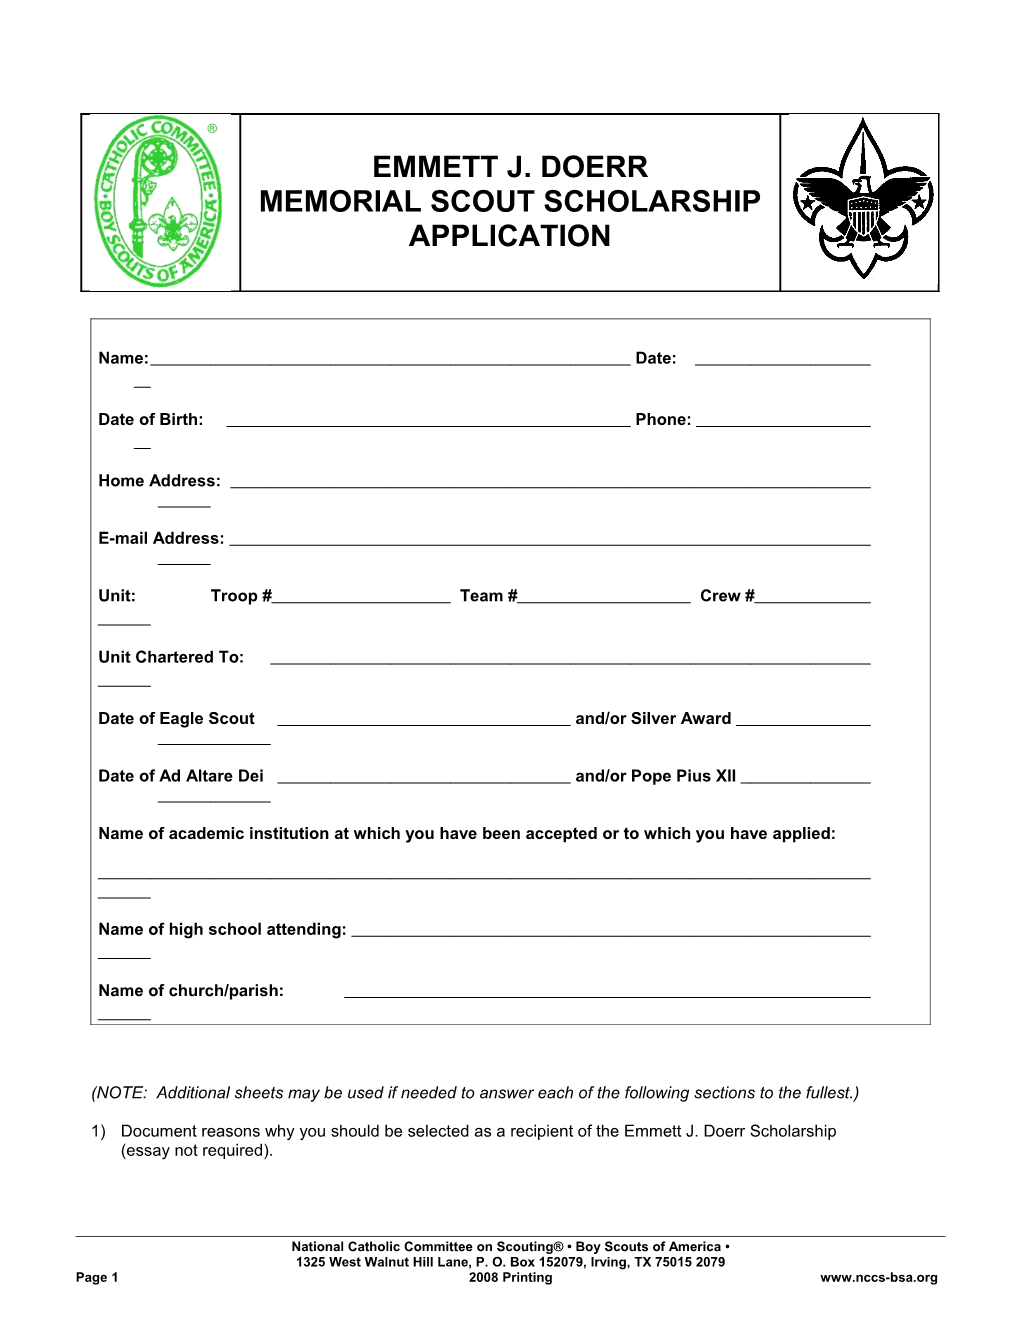 Emmett J. Doerr Memorial Scout Scholarship Application s1